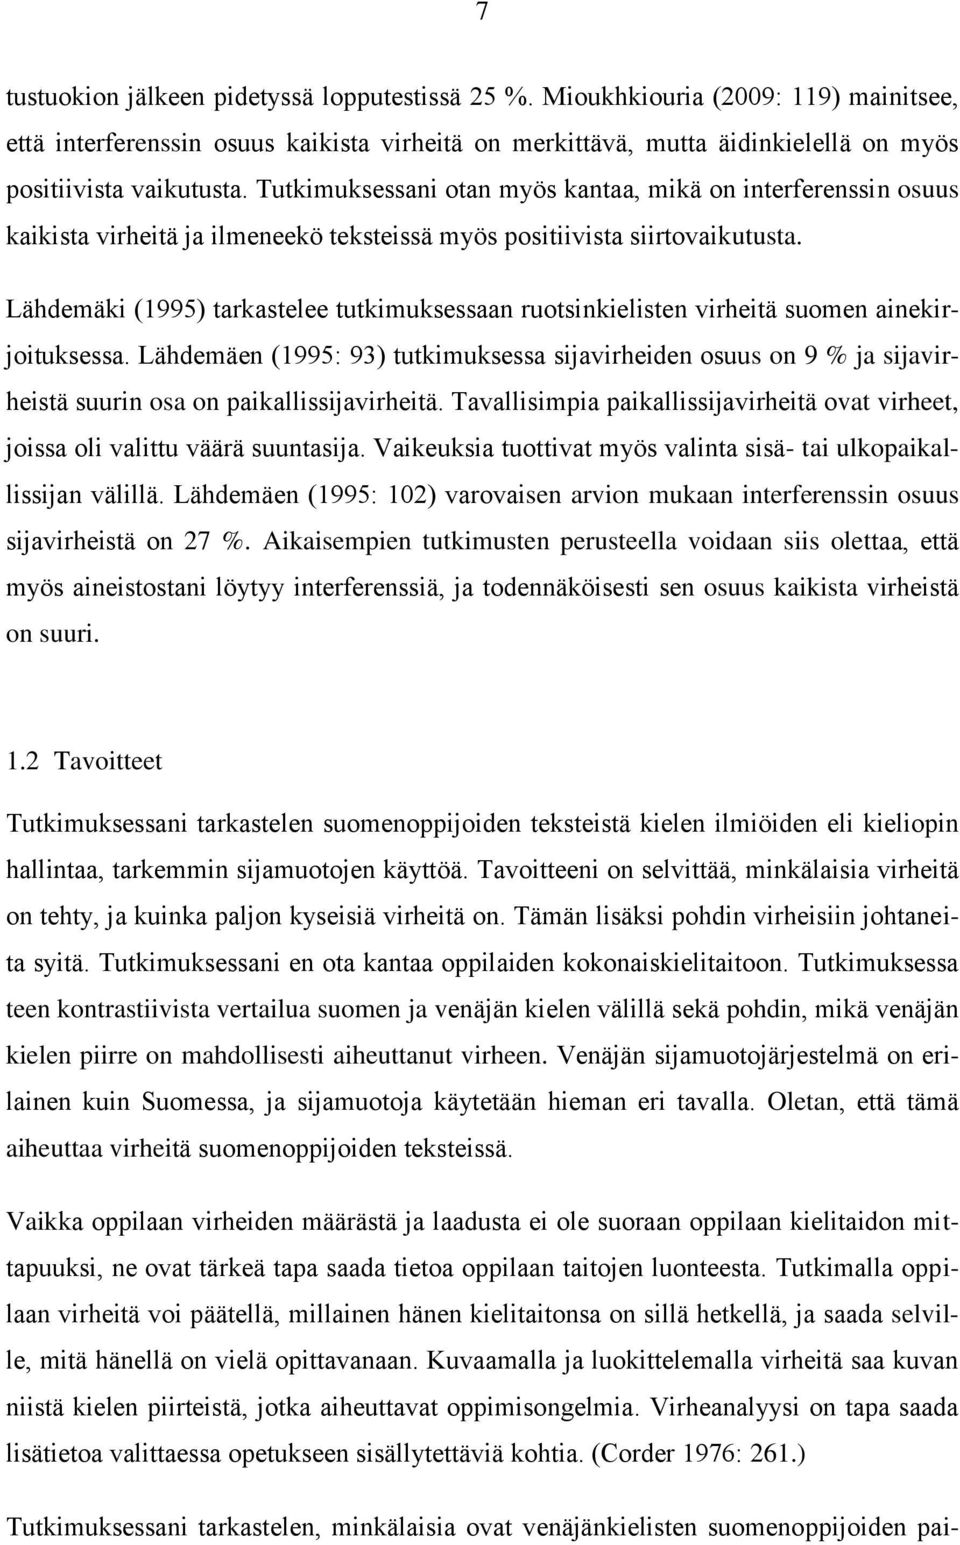 Lähdemäki (1995) tarkastelee tutkimuksessaan ruotsinkielisten virheitä suomen ainekirjoituksessa.